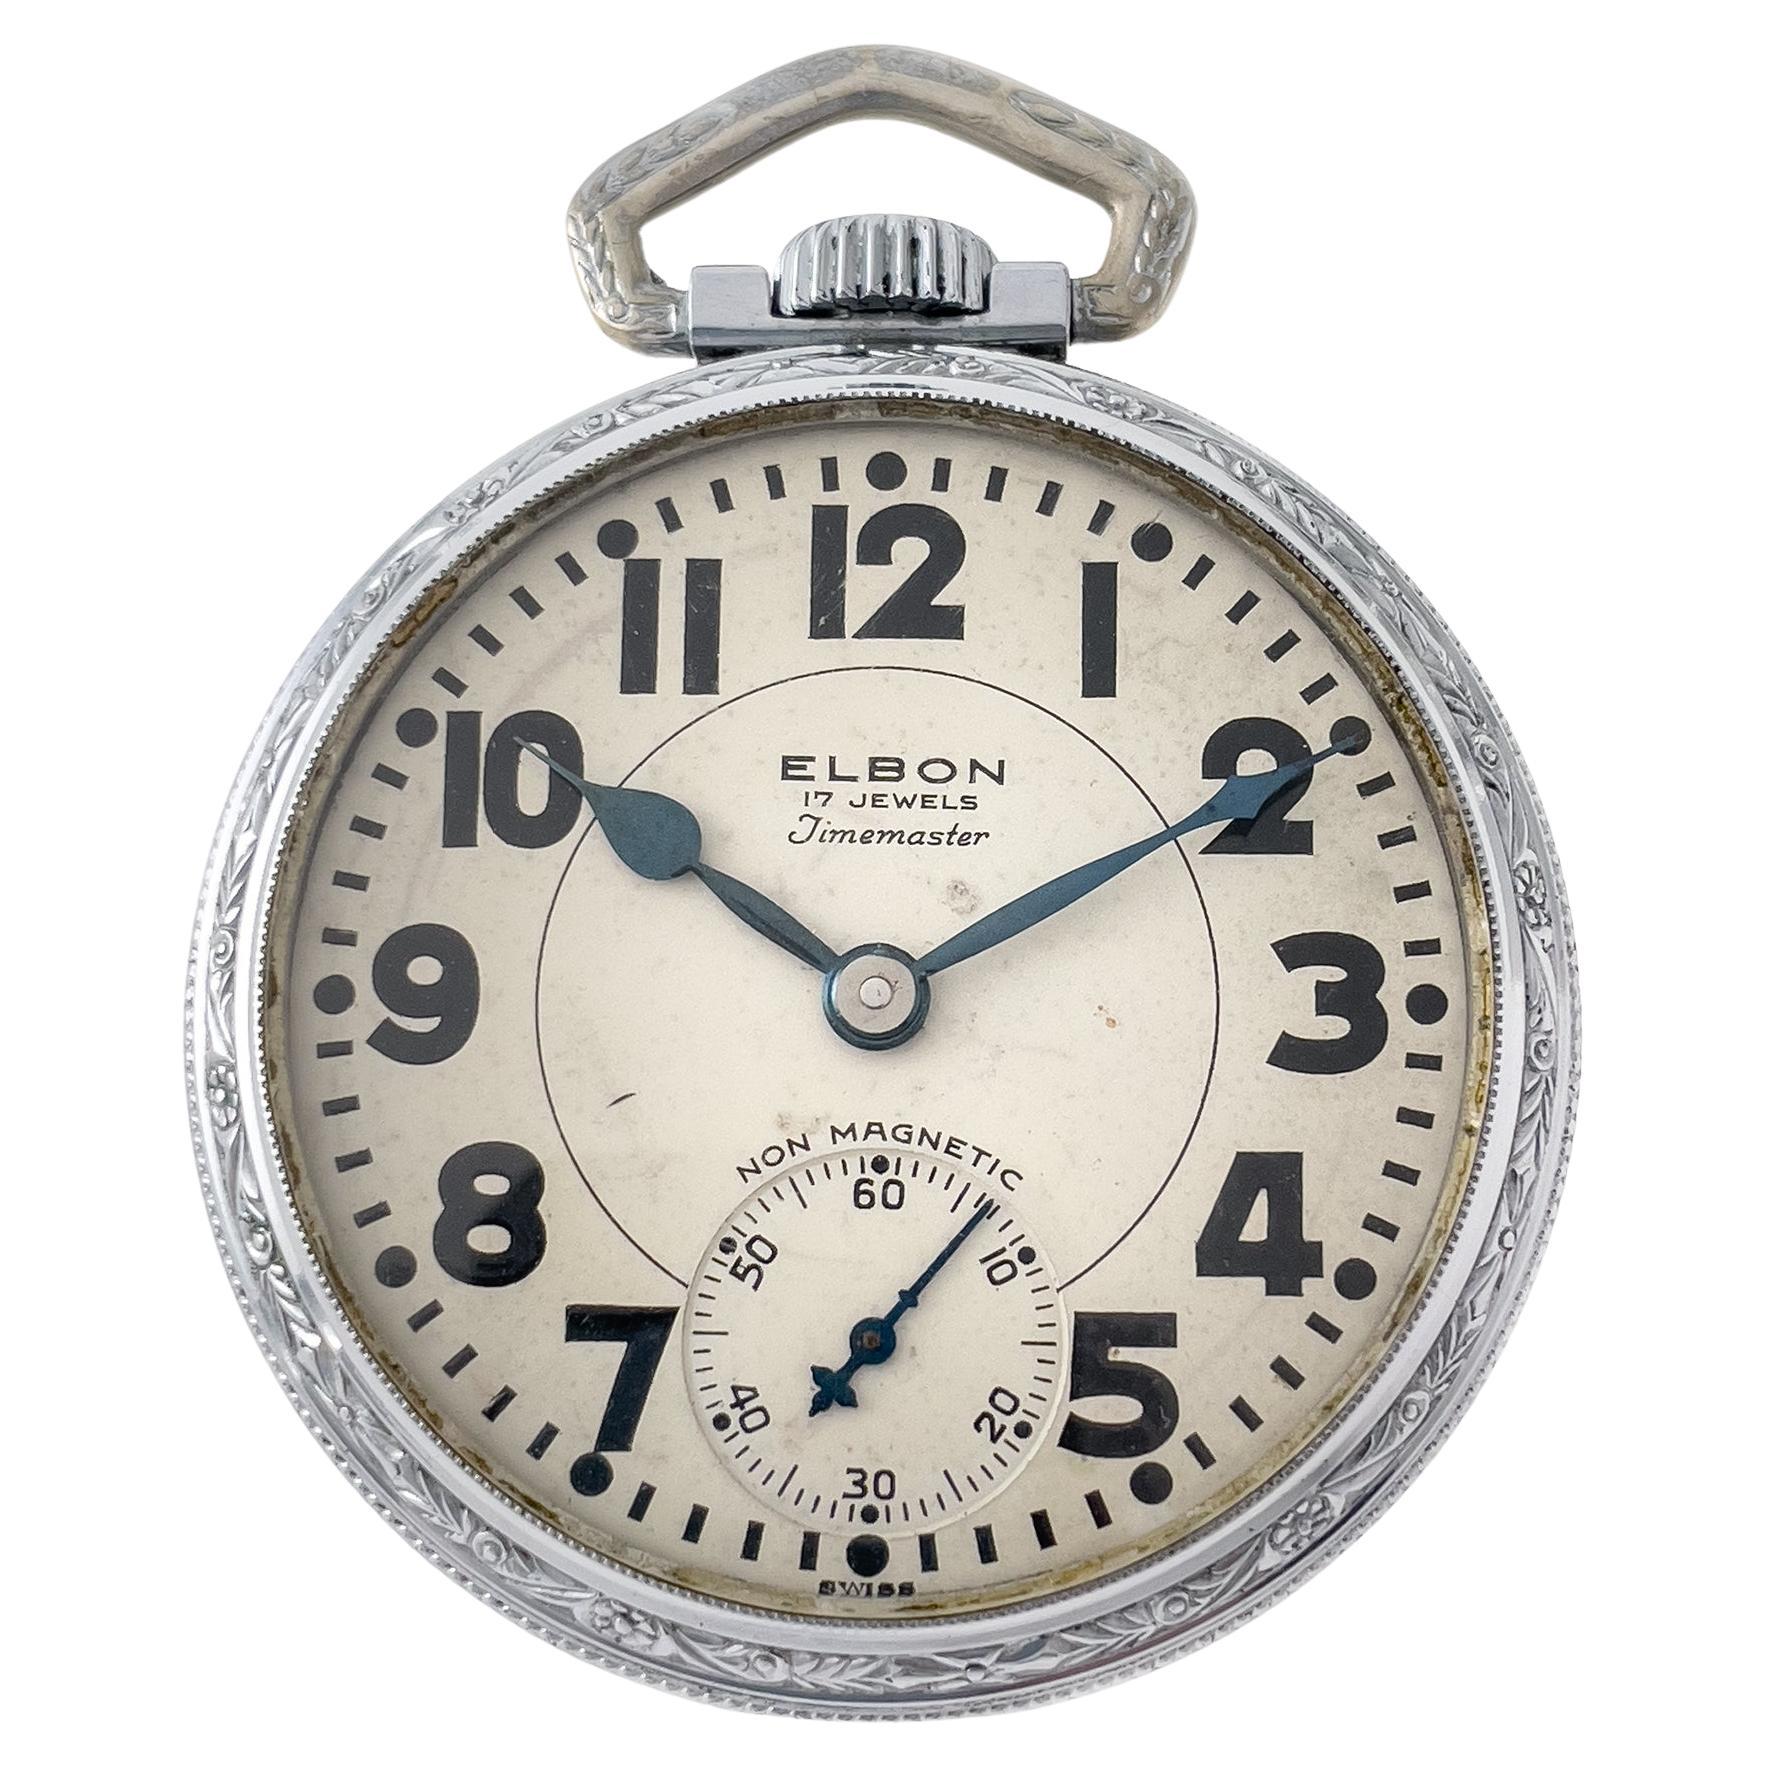 Elbon 17 Jewels Timemaster GMT Taschenuhr